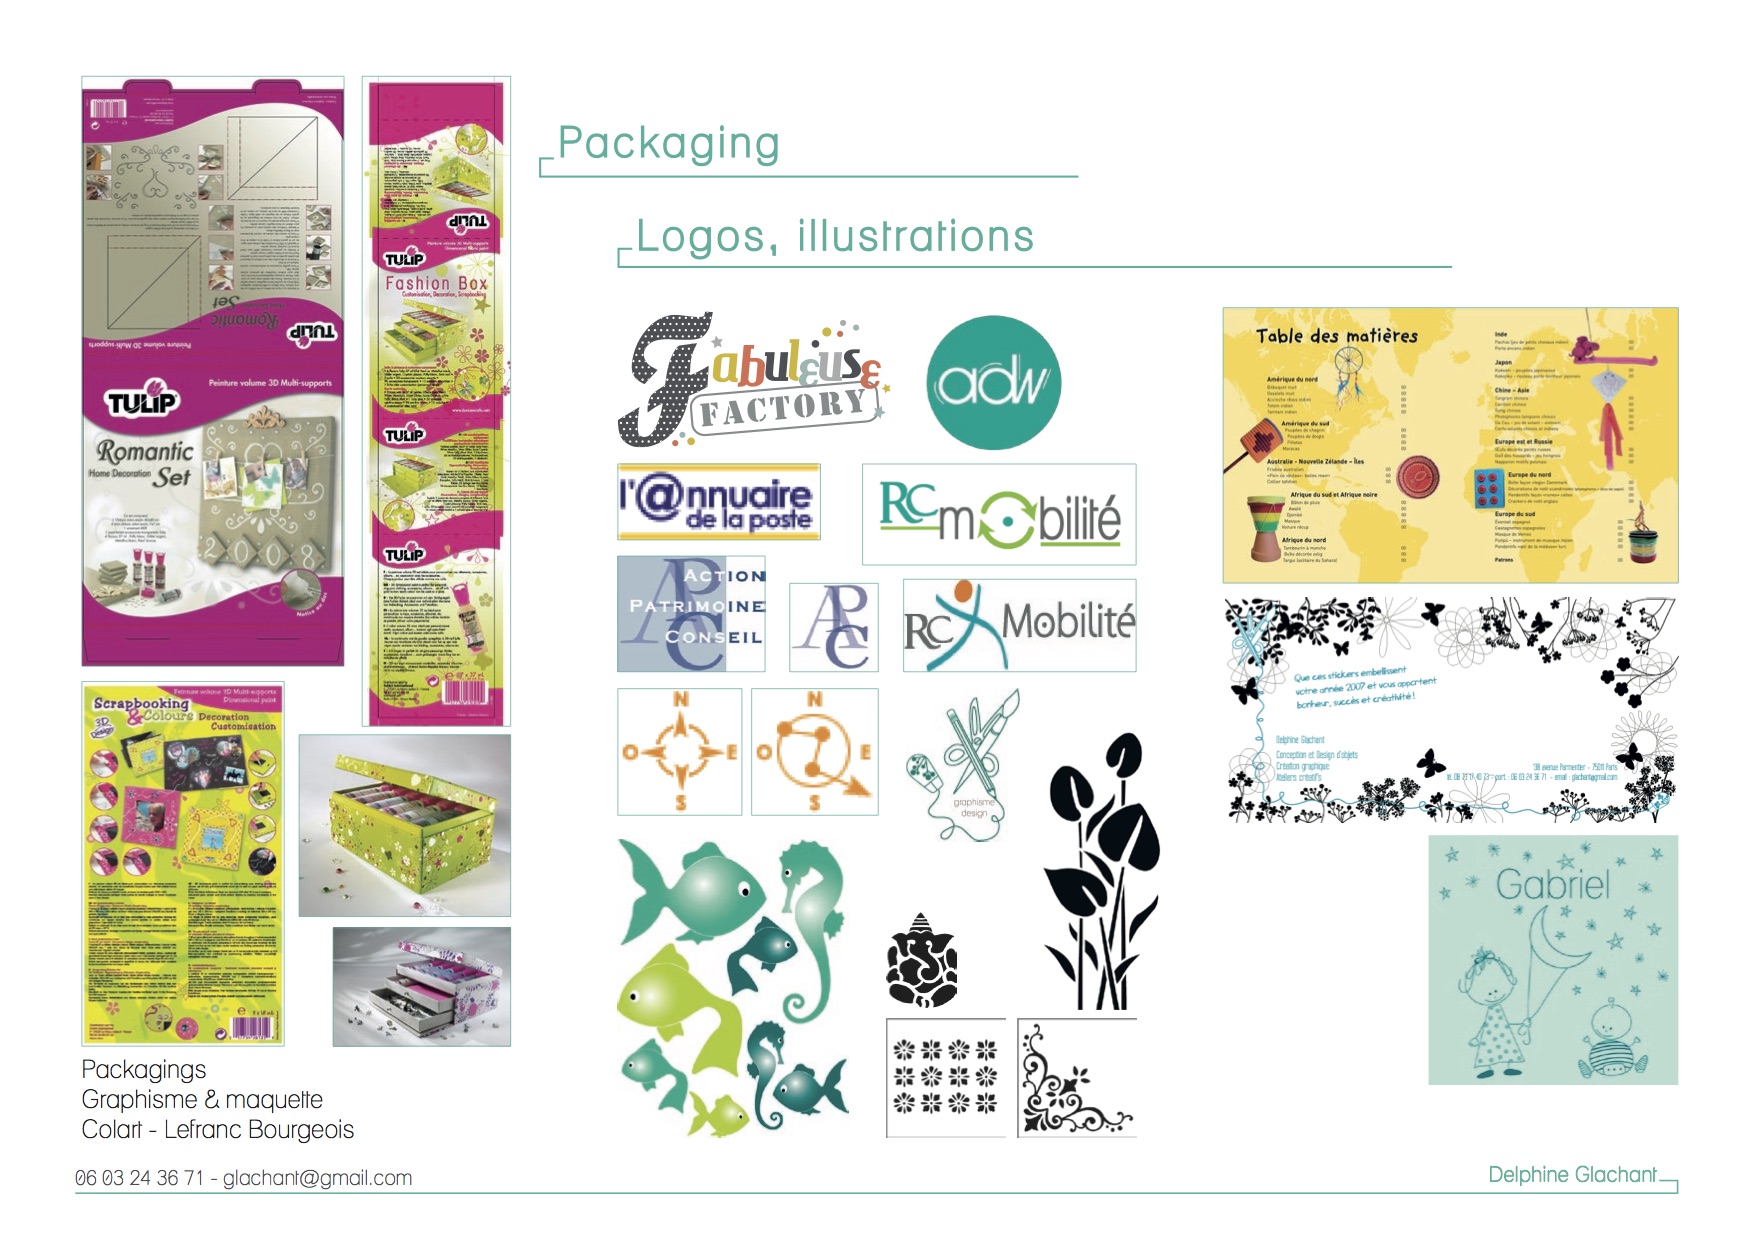 packaging, logos, illustrations...